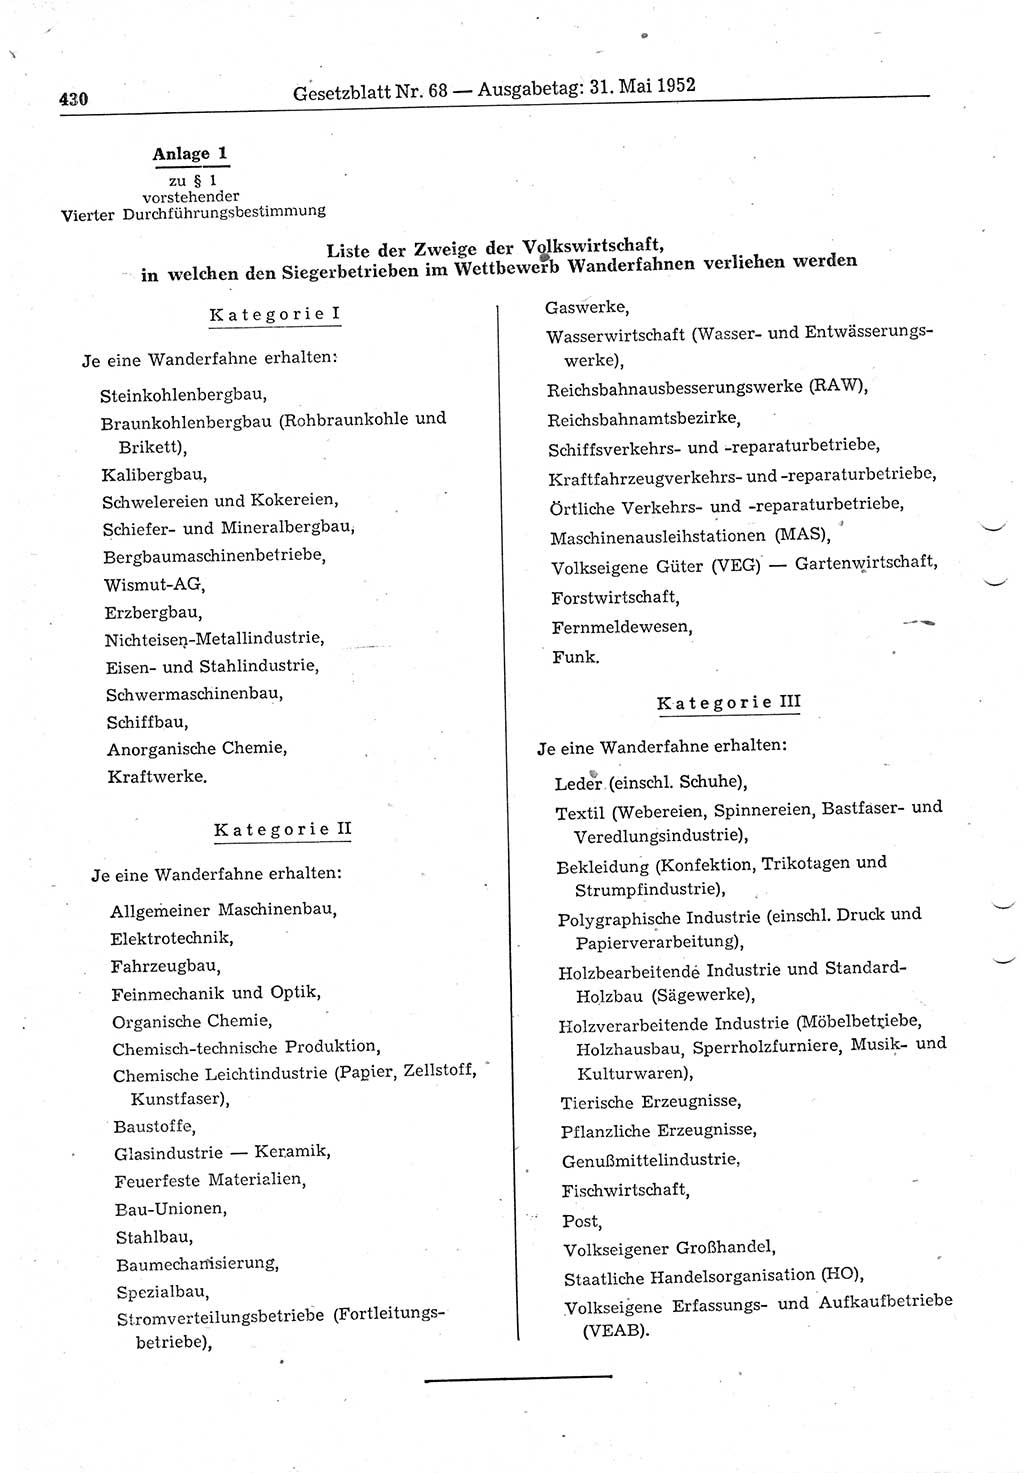 Gesetzblatt (GBl.) der Deutschen Demokratischen Republik (DDR) 1952, Seite 430 (GBl. DDR 1952, S. 430)